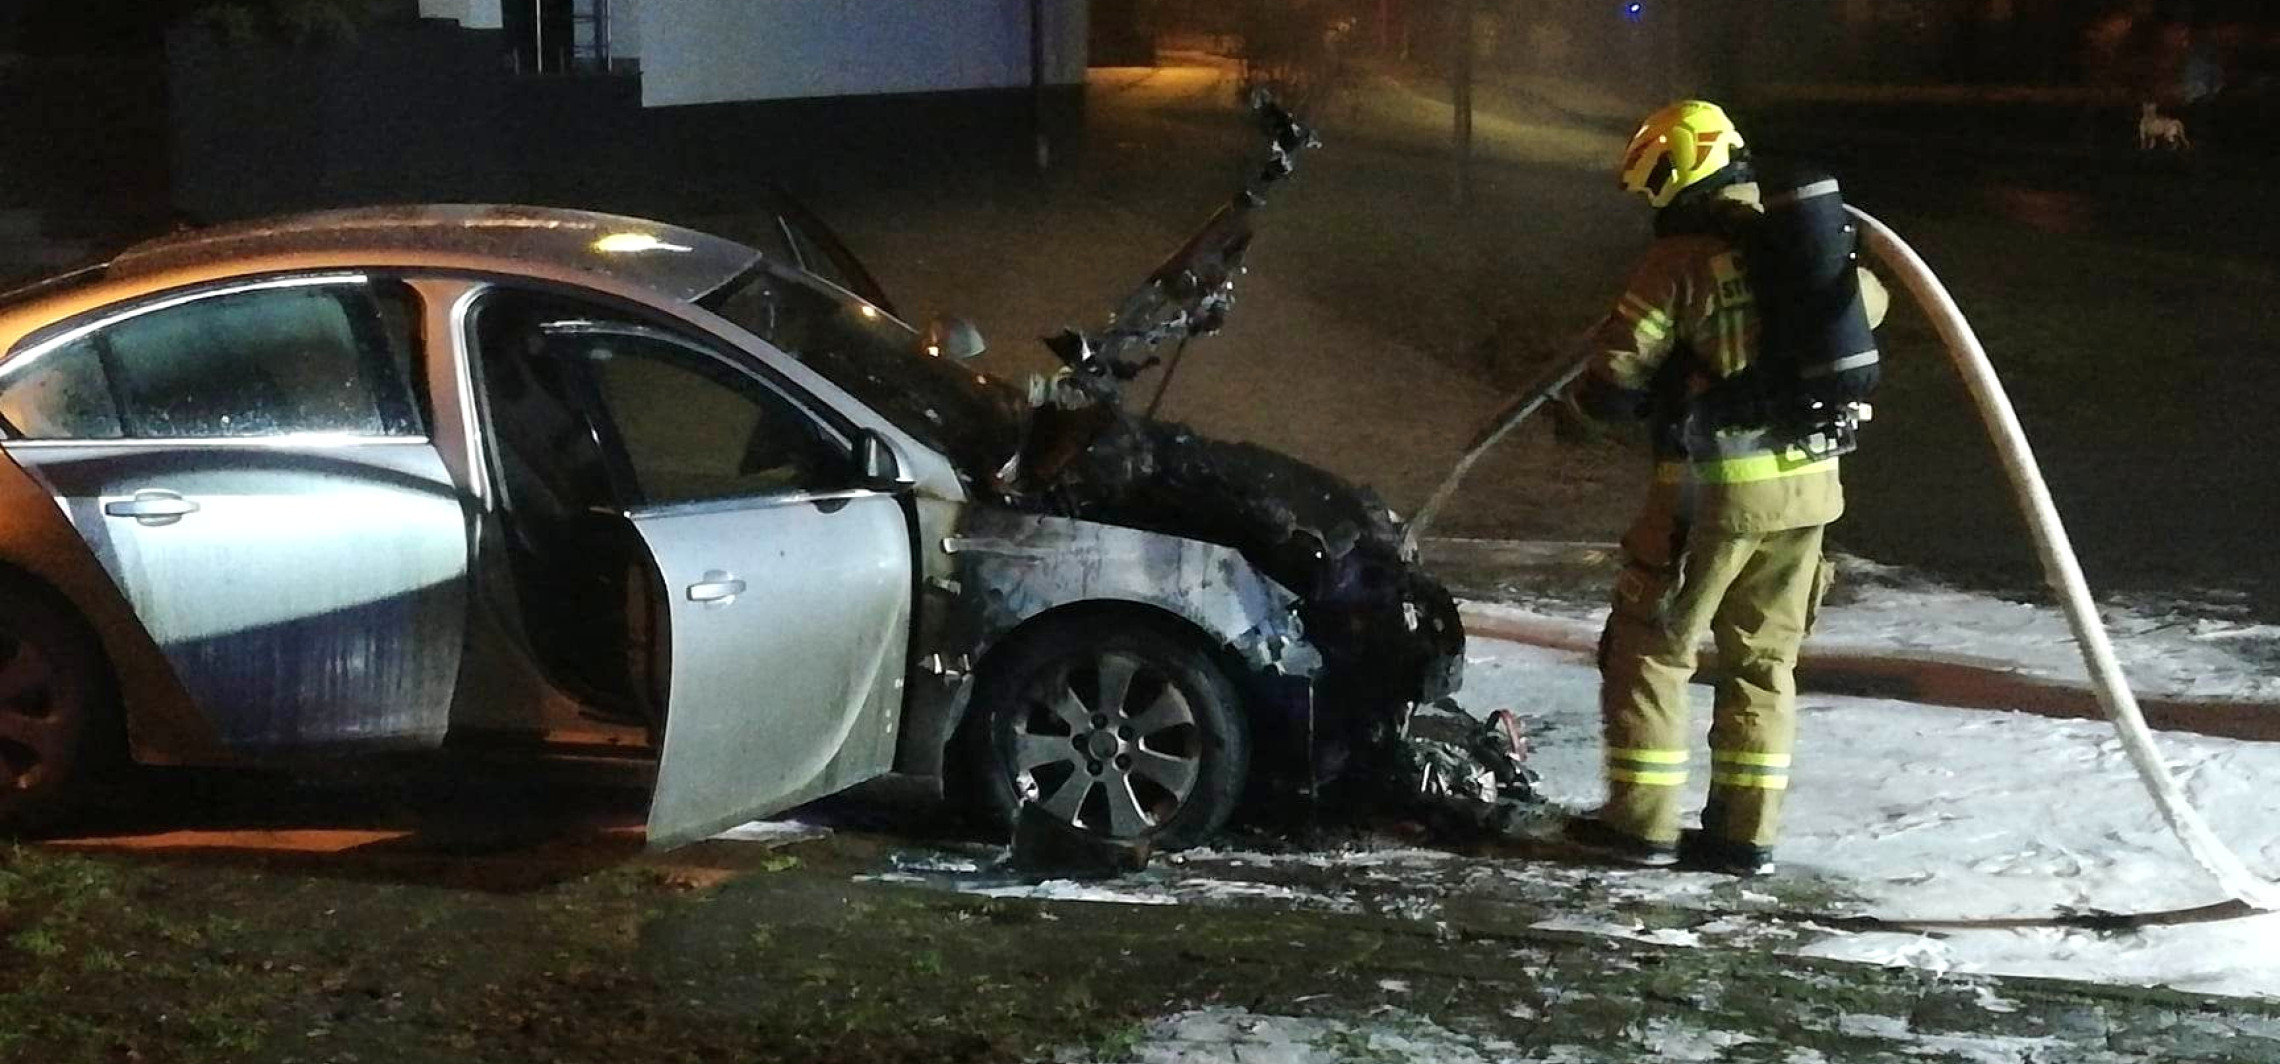 Kruszwica - Opel stanął w ogniu. Spalił się cały przód